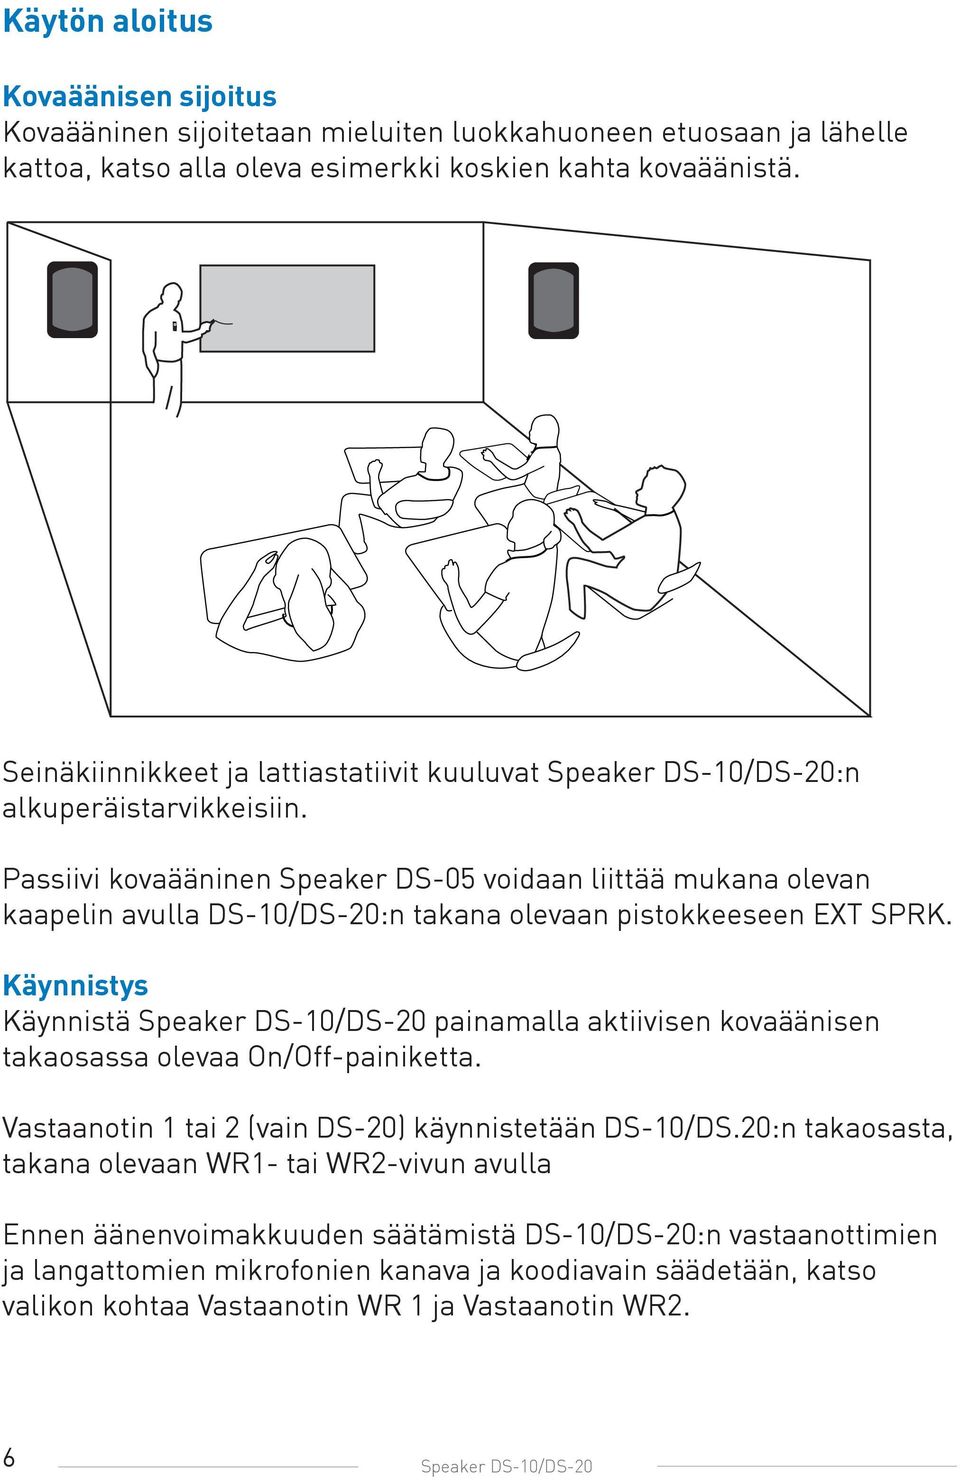 Passiivi kovaääninen Speaker DS-05 voidaan liittää mukana olevan kaapelin avulla DS-10/DS-20:n takana olevaan pistokkeeseen EXT SPRK.